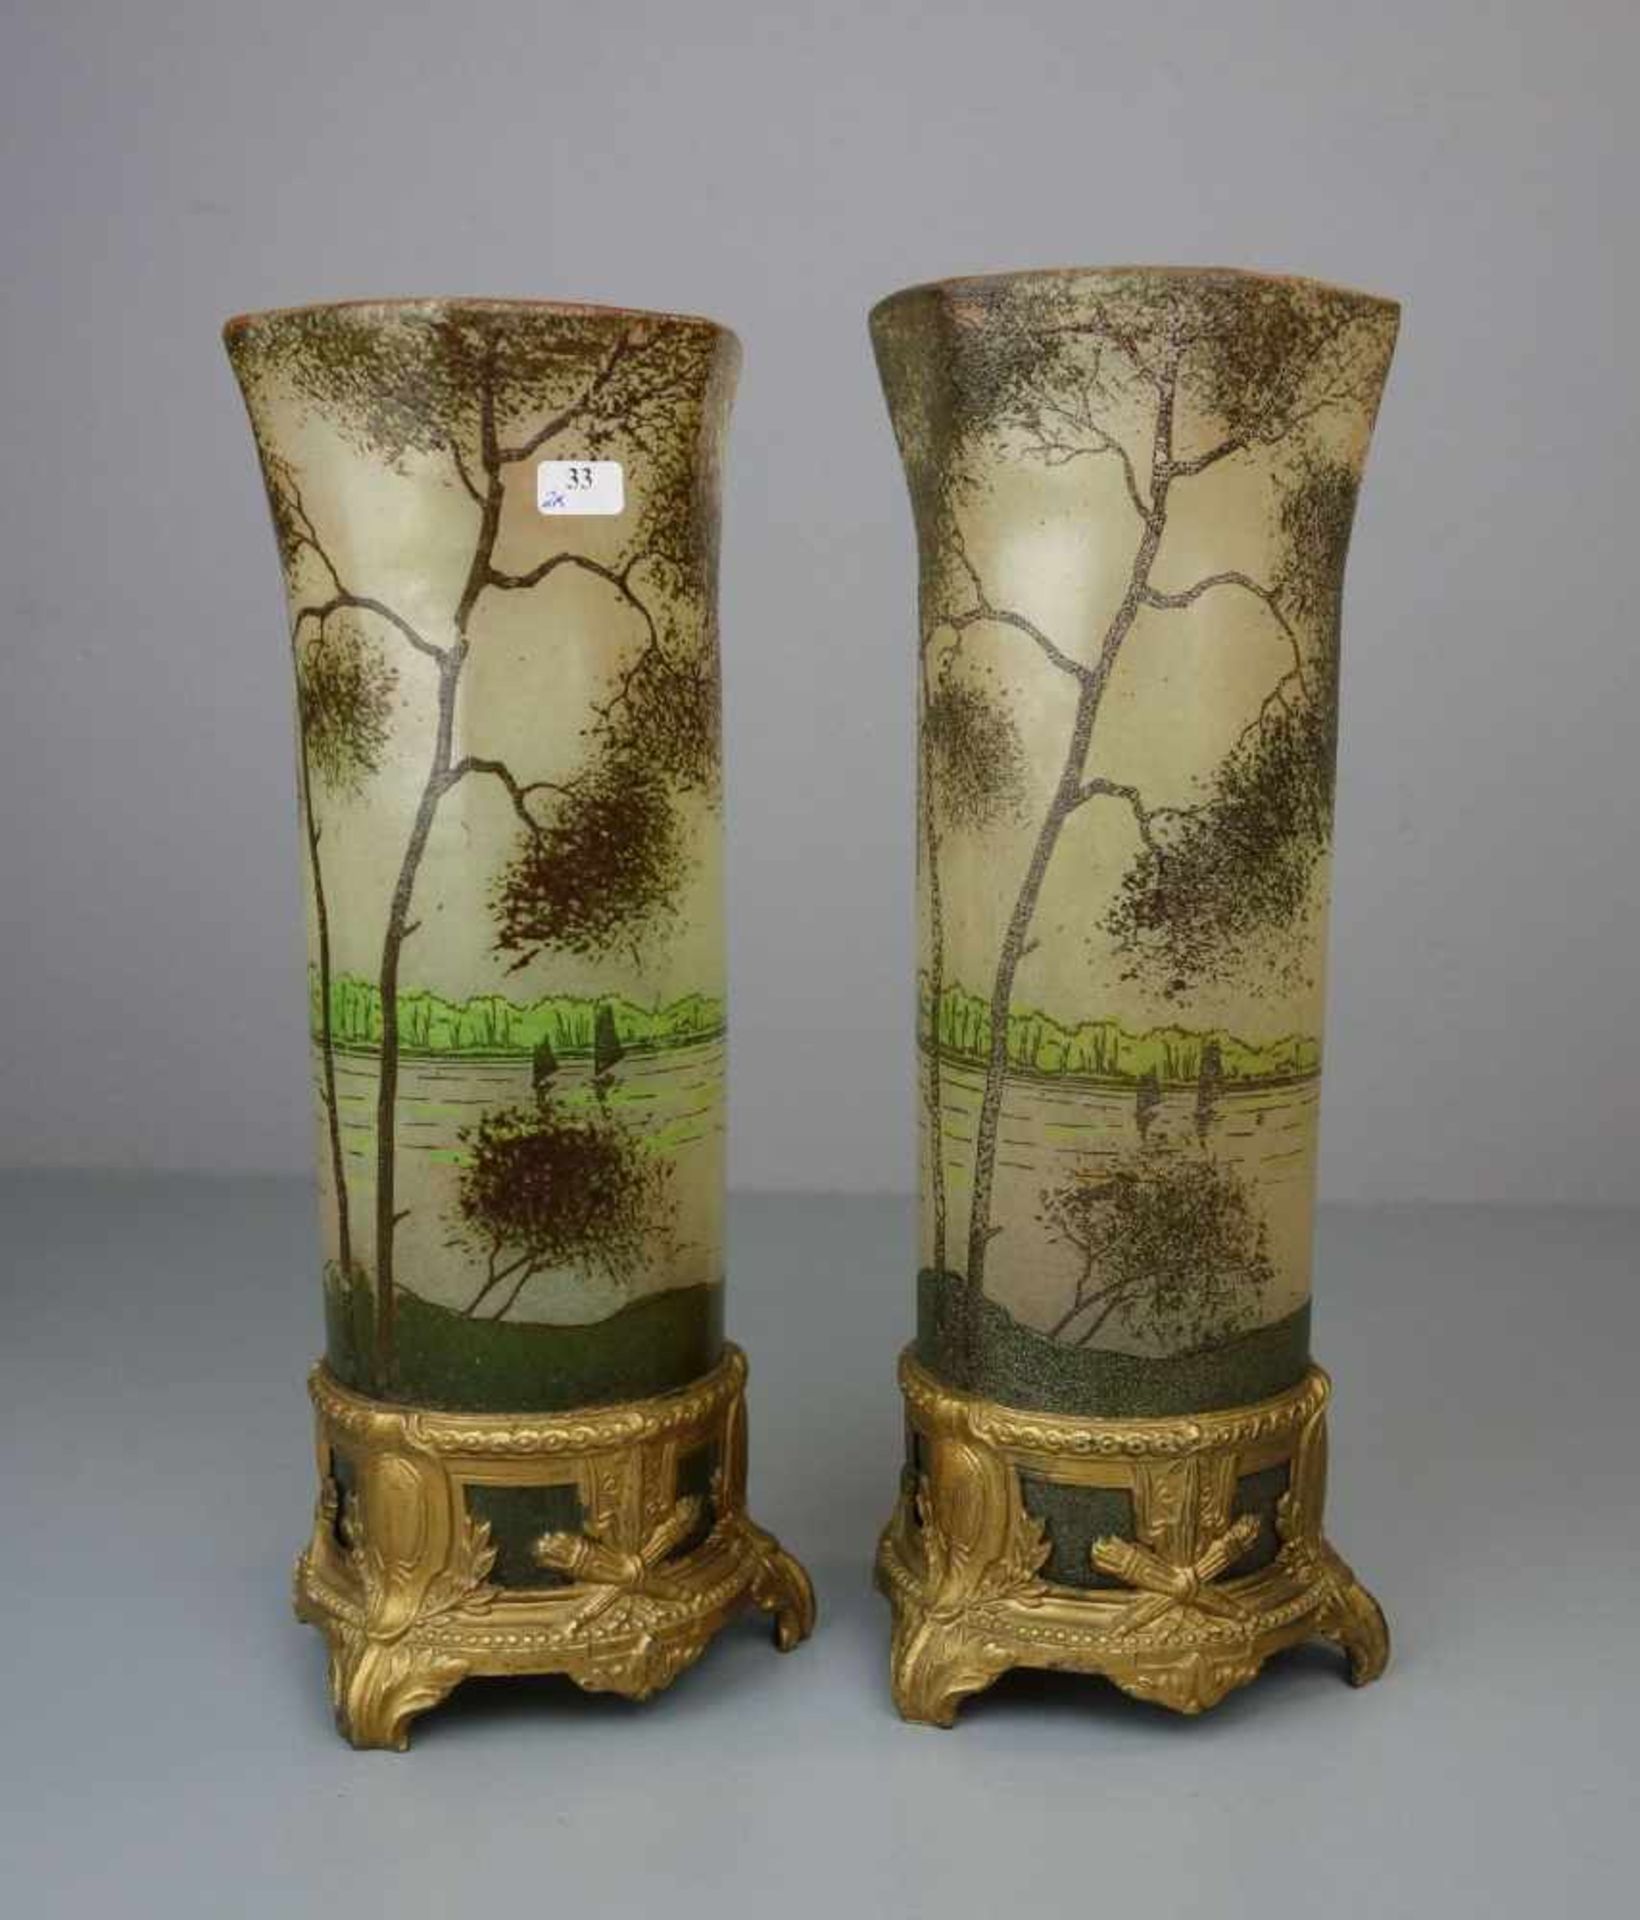 PAAR JUGENDSTILVASEN MIT LANDSCHAFTSMOTIV UND METALLMONTUREN / pair of art nouveau vases with